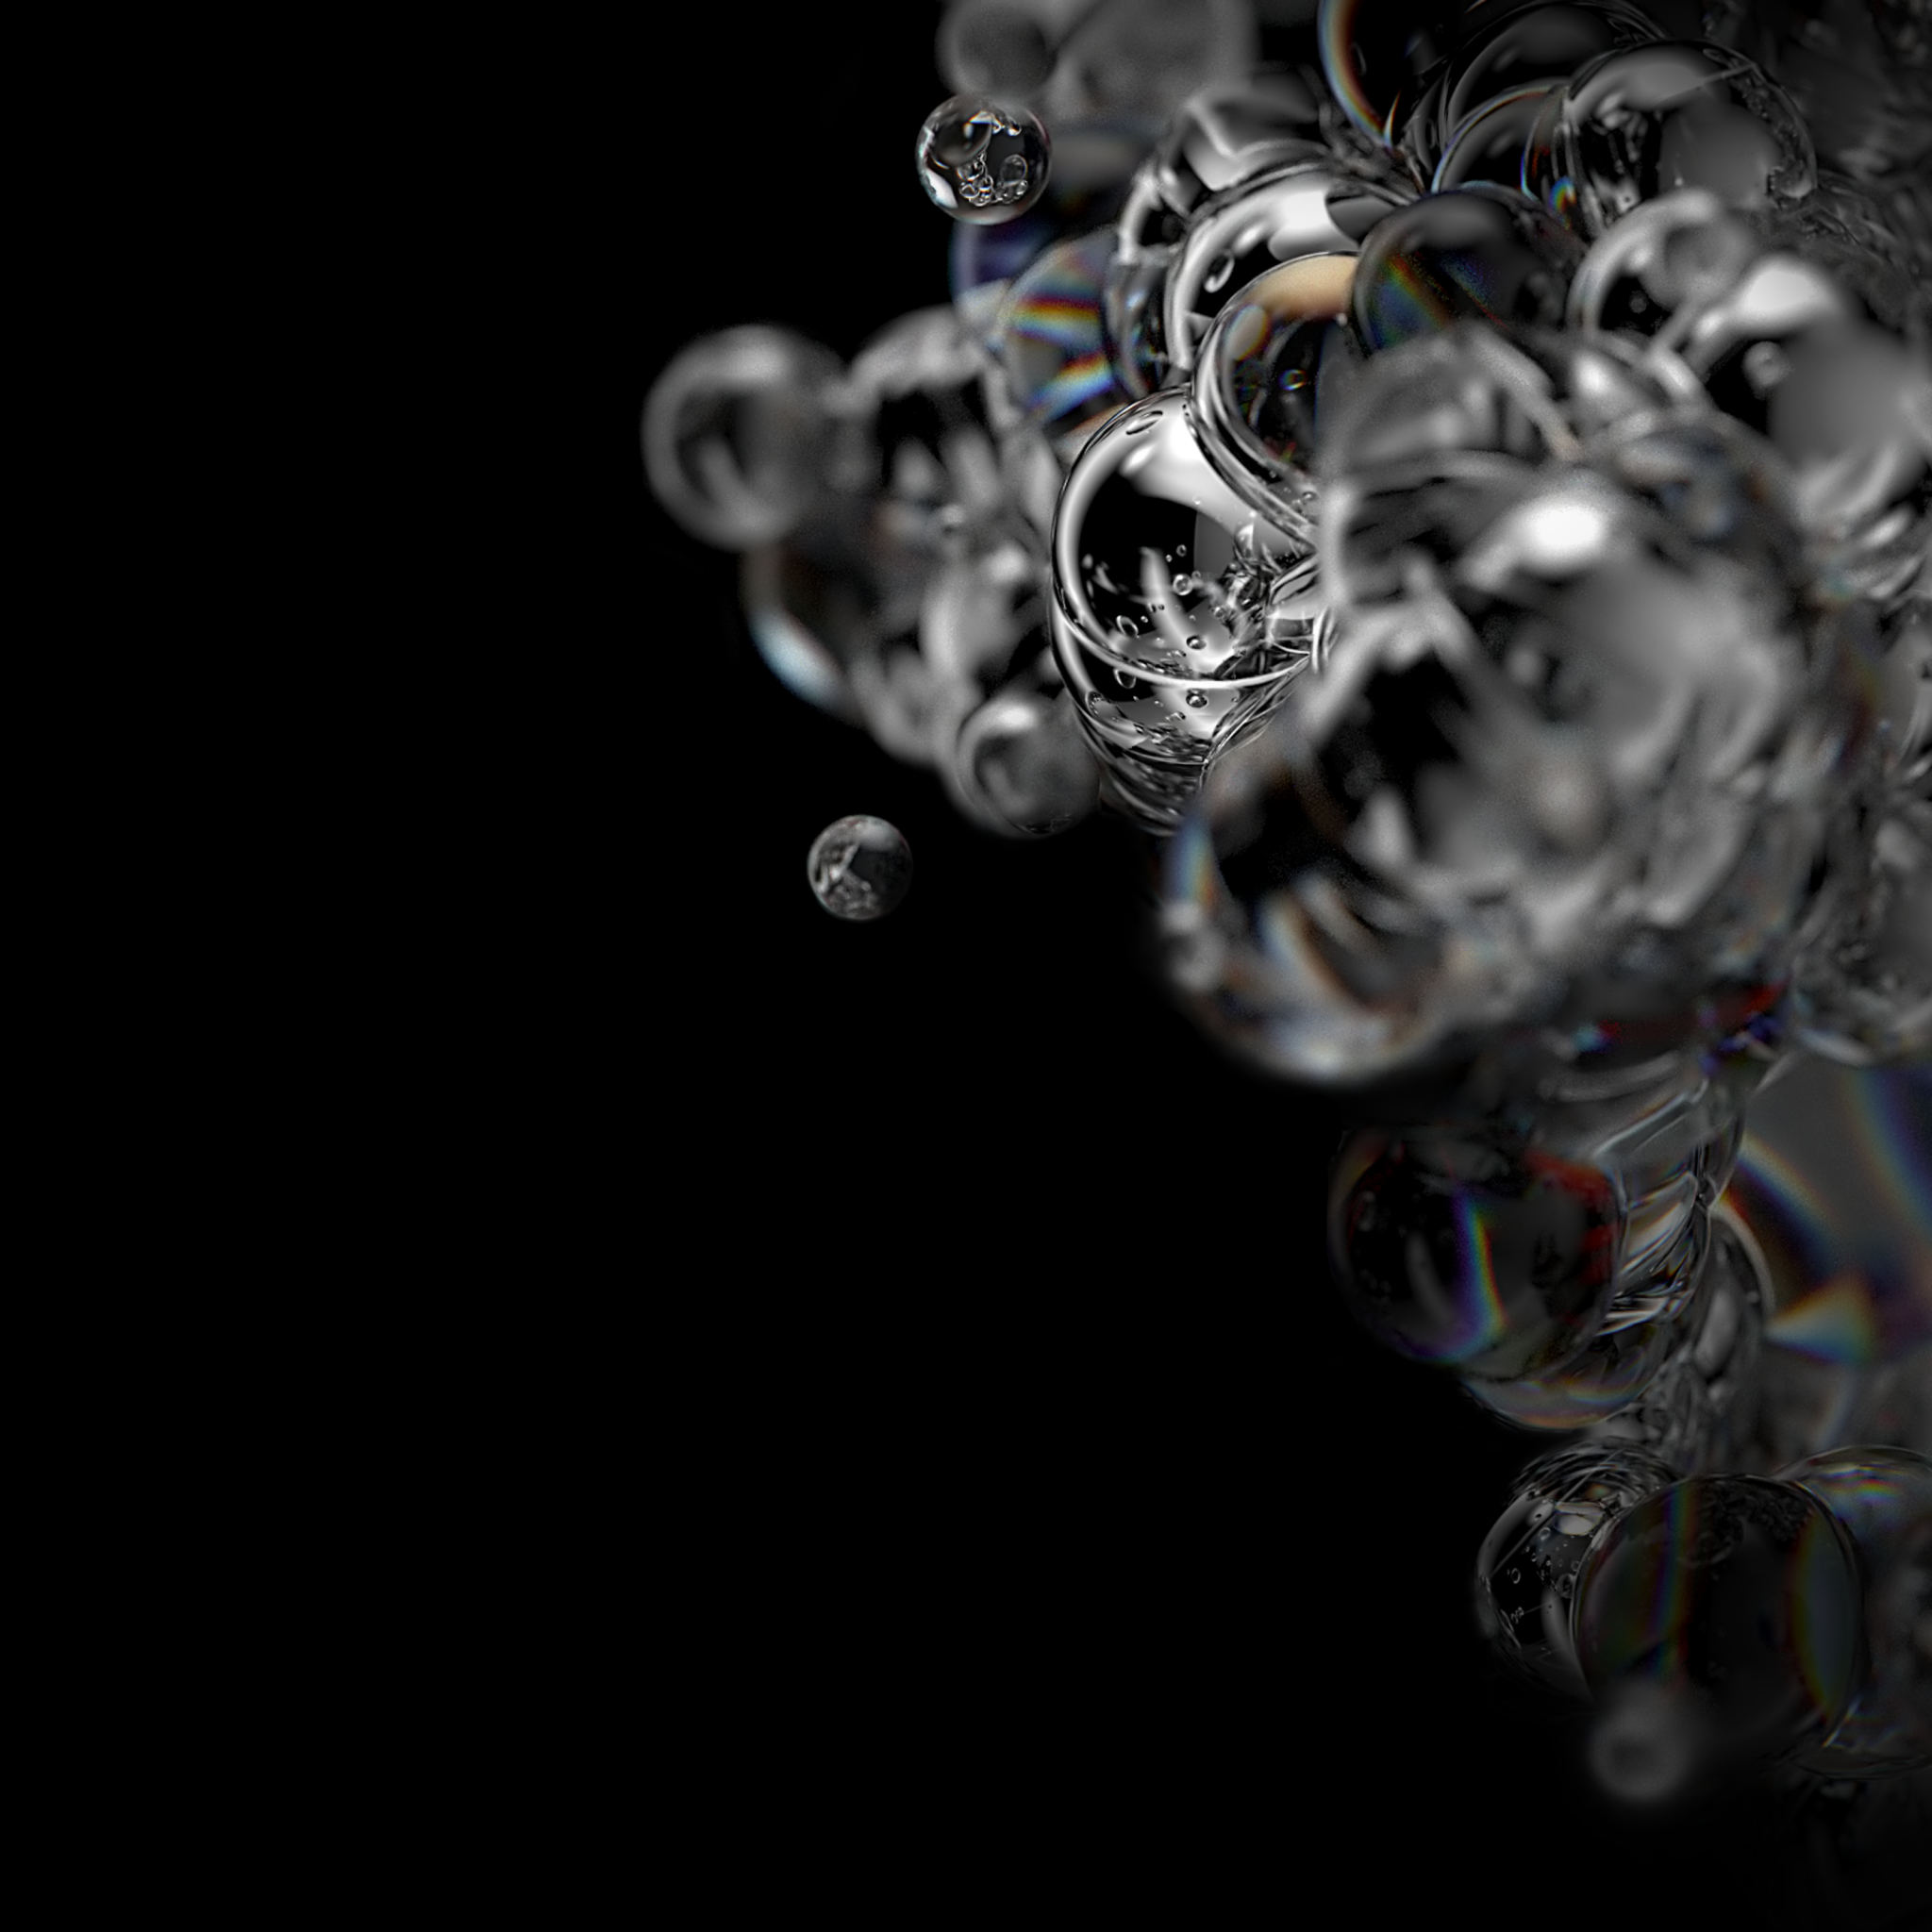 Bubbles Wallpaper 4K, Liquid, Photography, #815